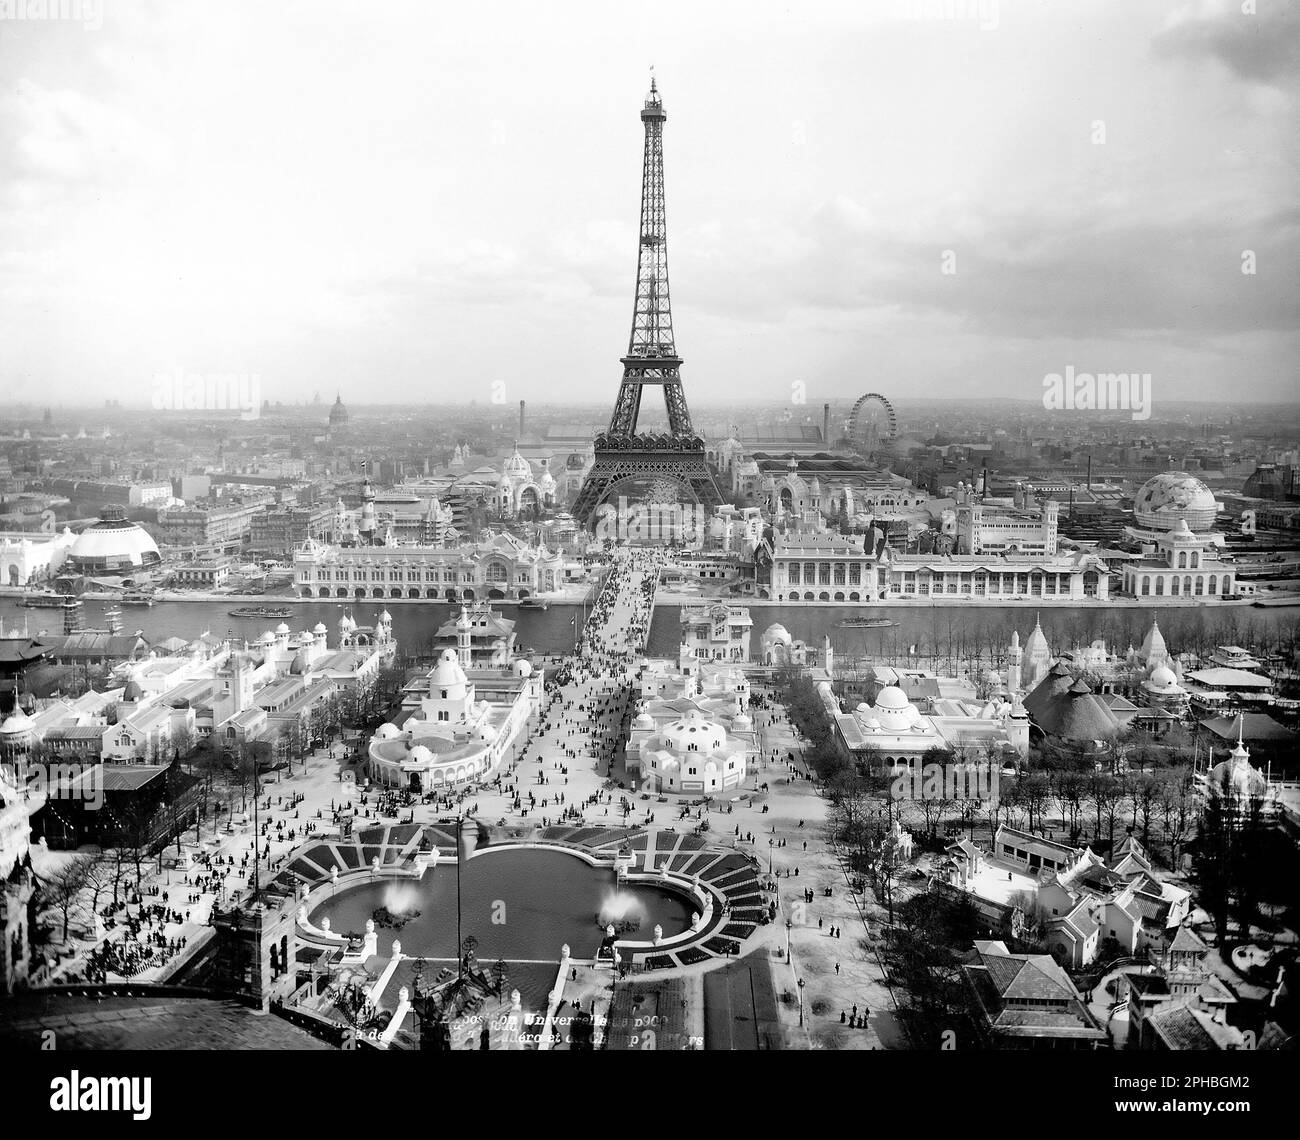 Eiffelturm, Trocadero und Champs de Mars, Exposition Universelle 1900, Paris, Frankreich. Der Eiffelturm diente 1889 als Eingang zur Expositionsuniversität. Stockfoto